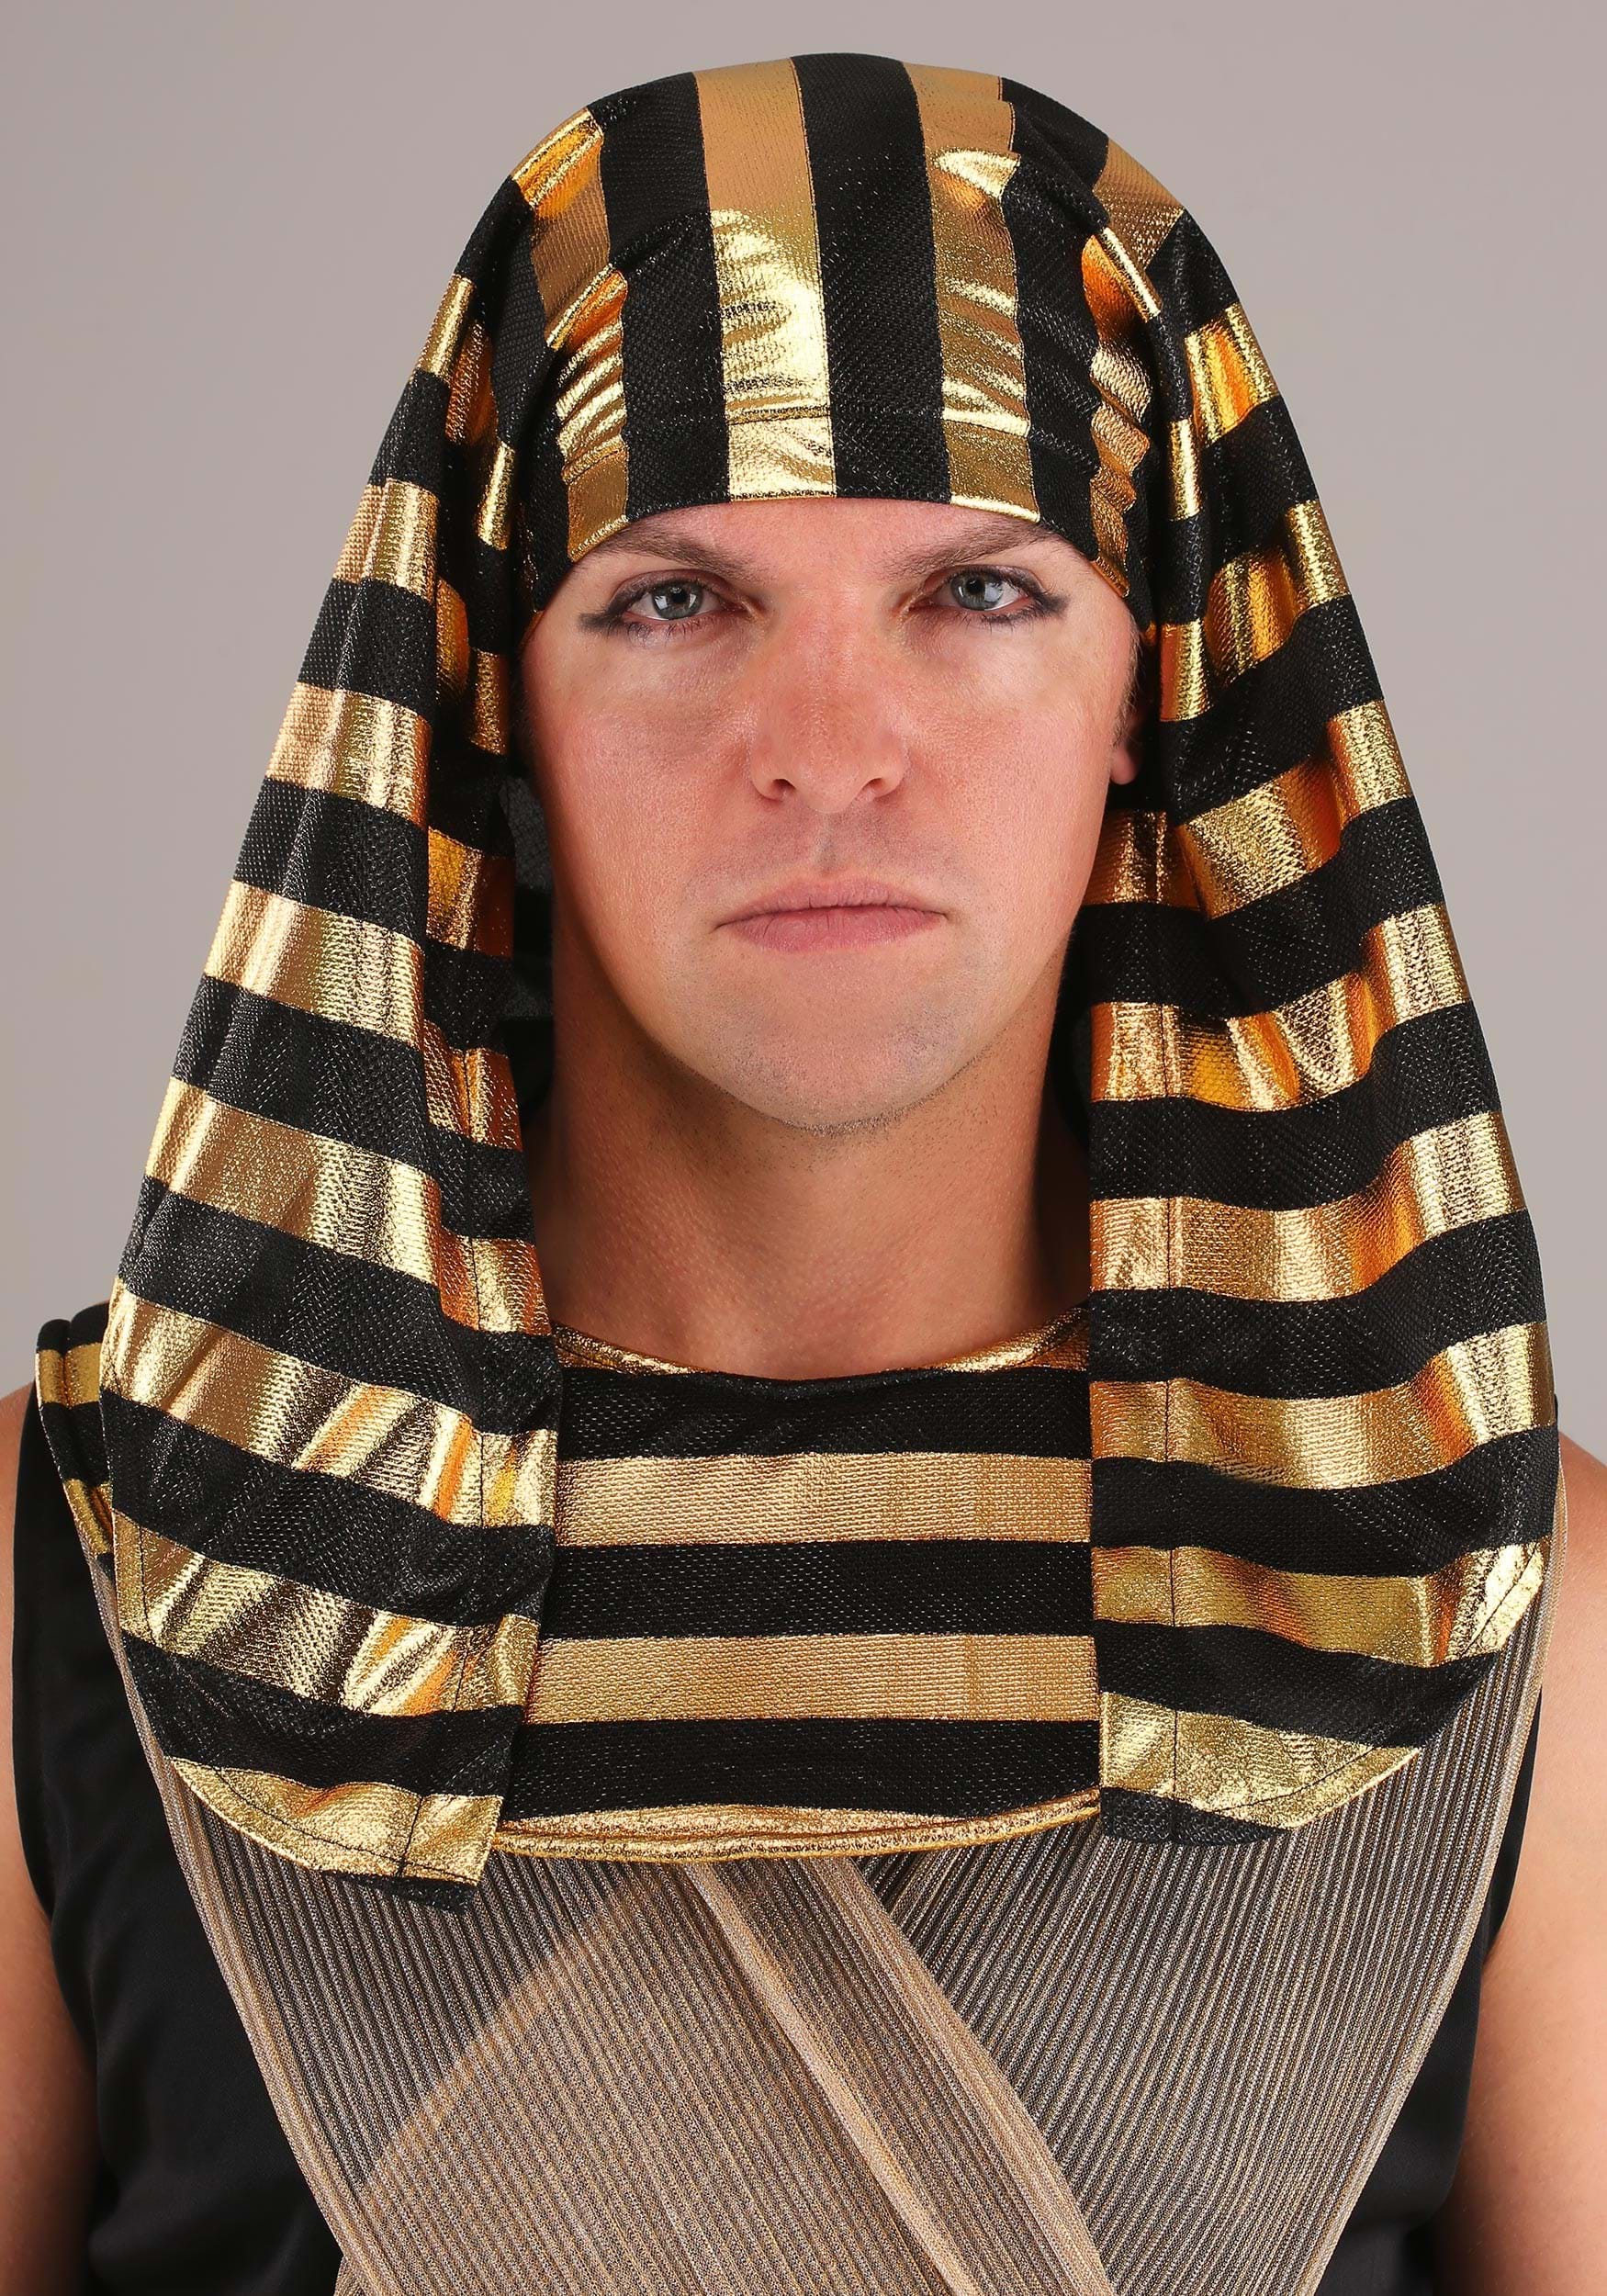 All Powerful Pharaoh Costume For Men